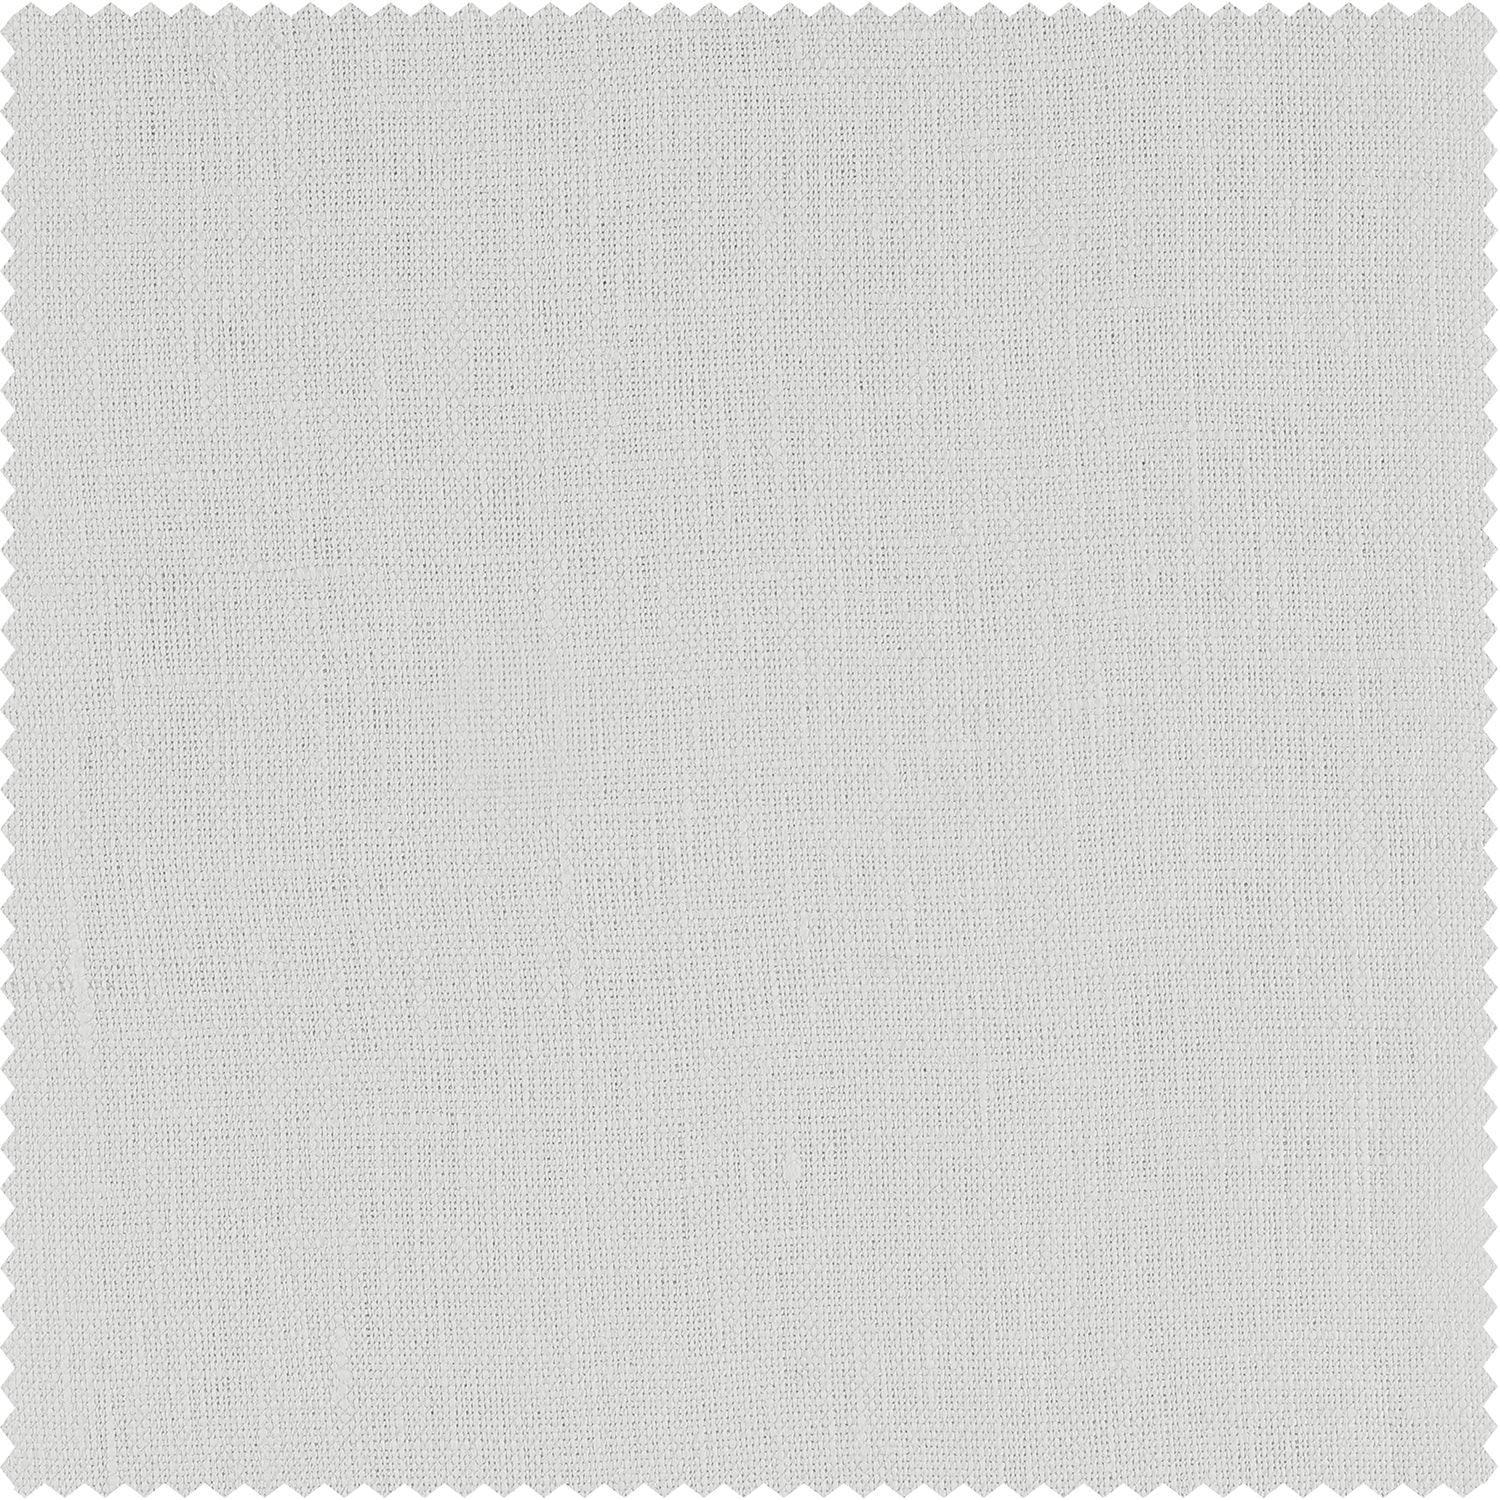 Crisp White French Linen Custom Curtain